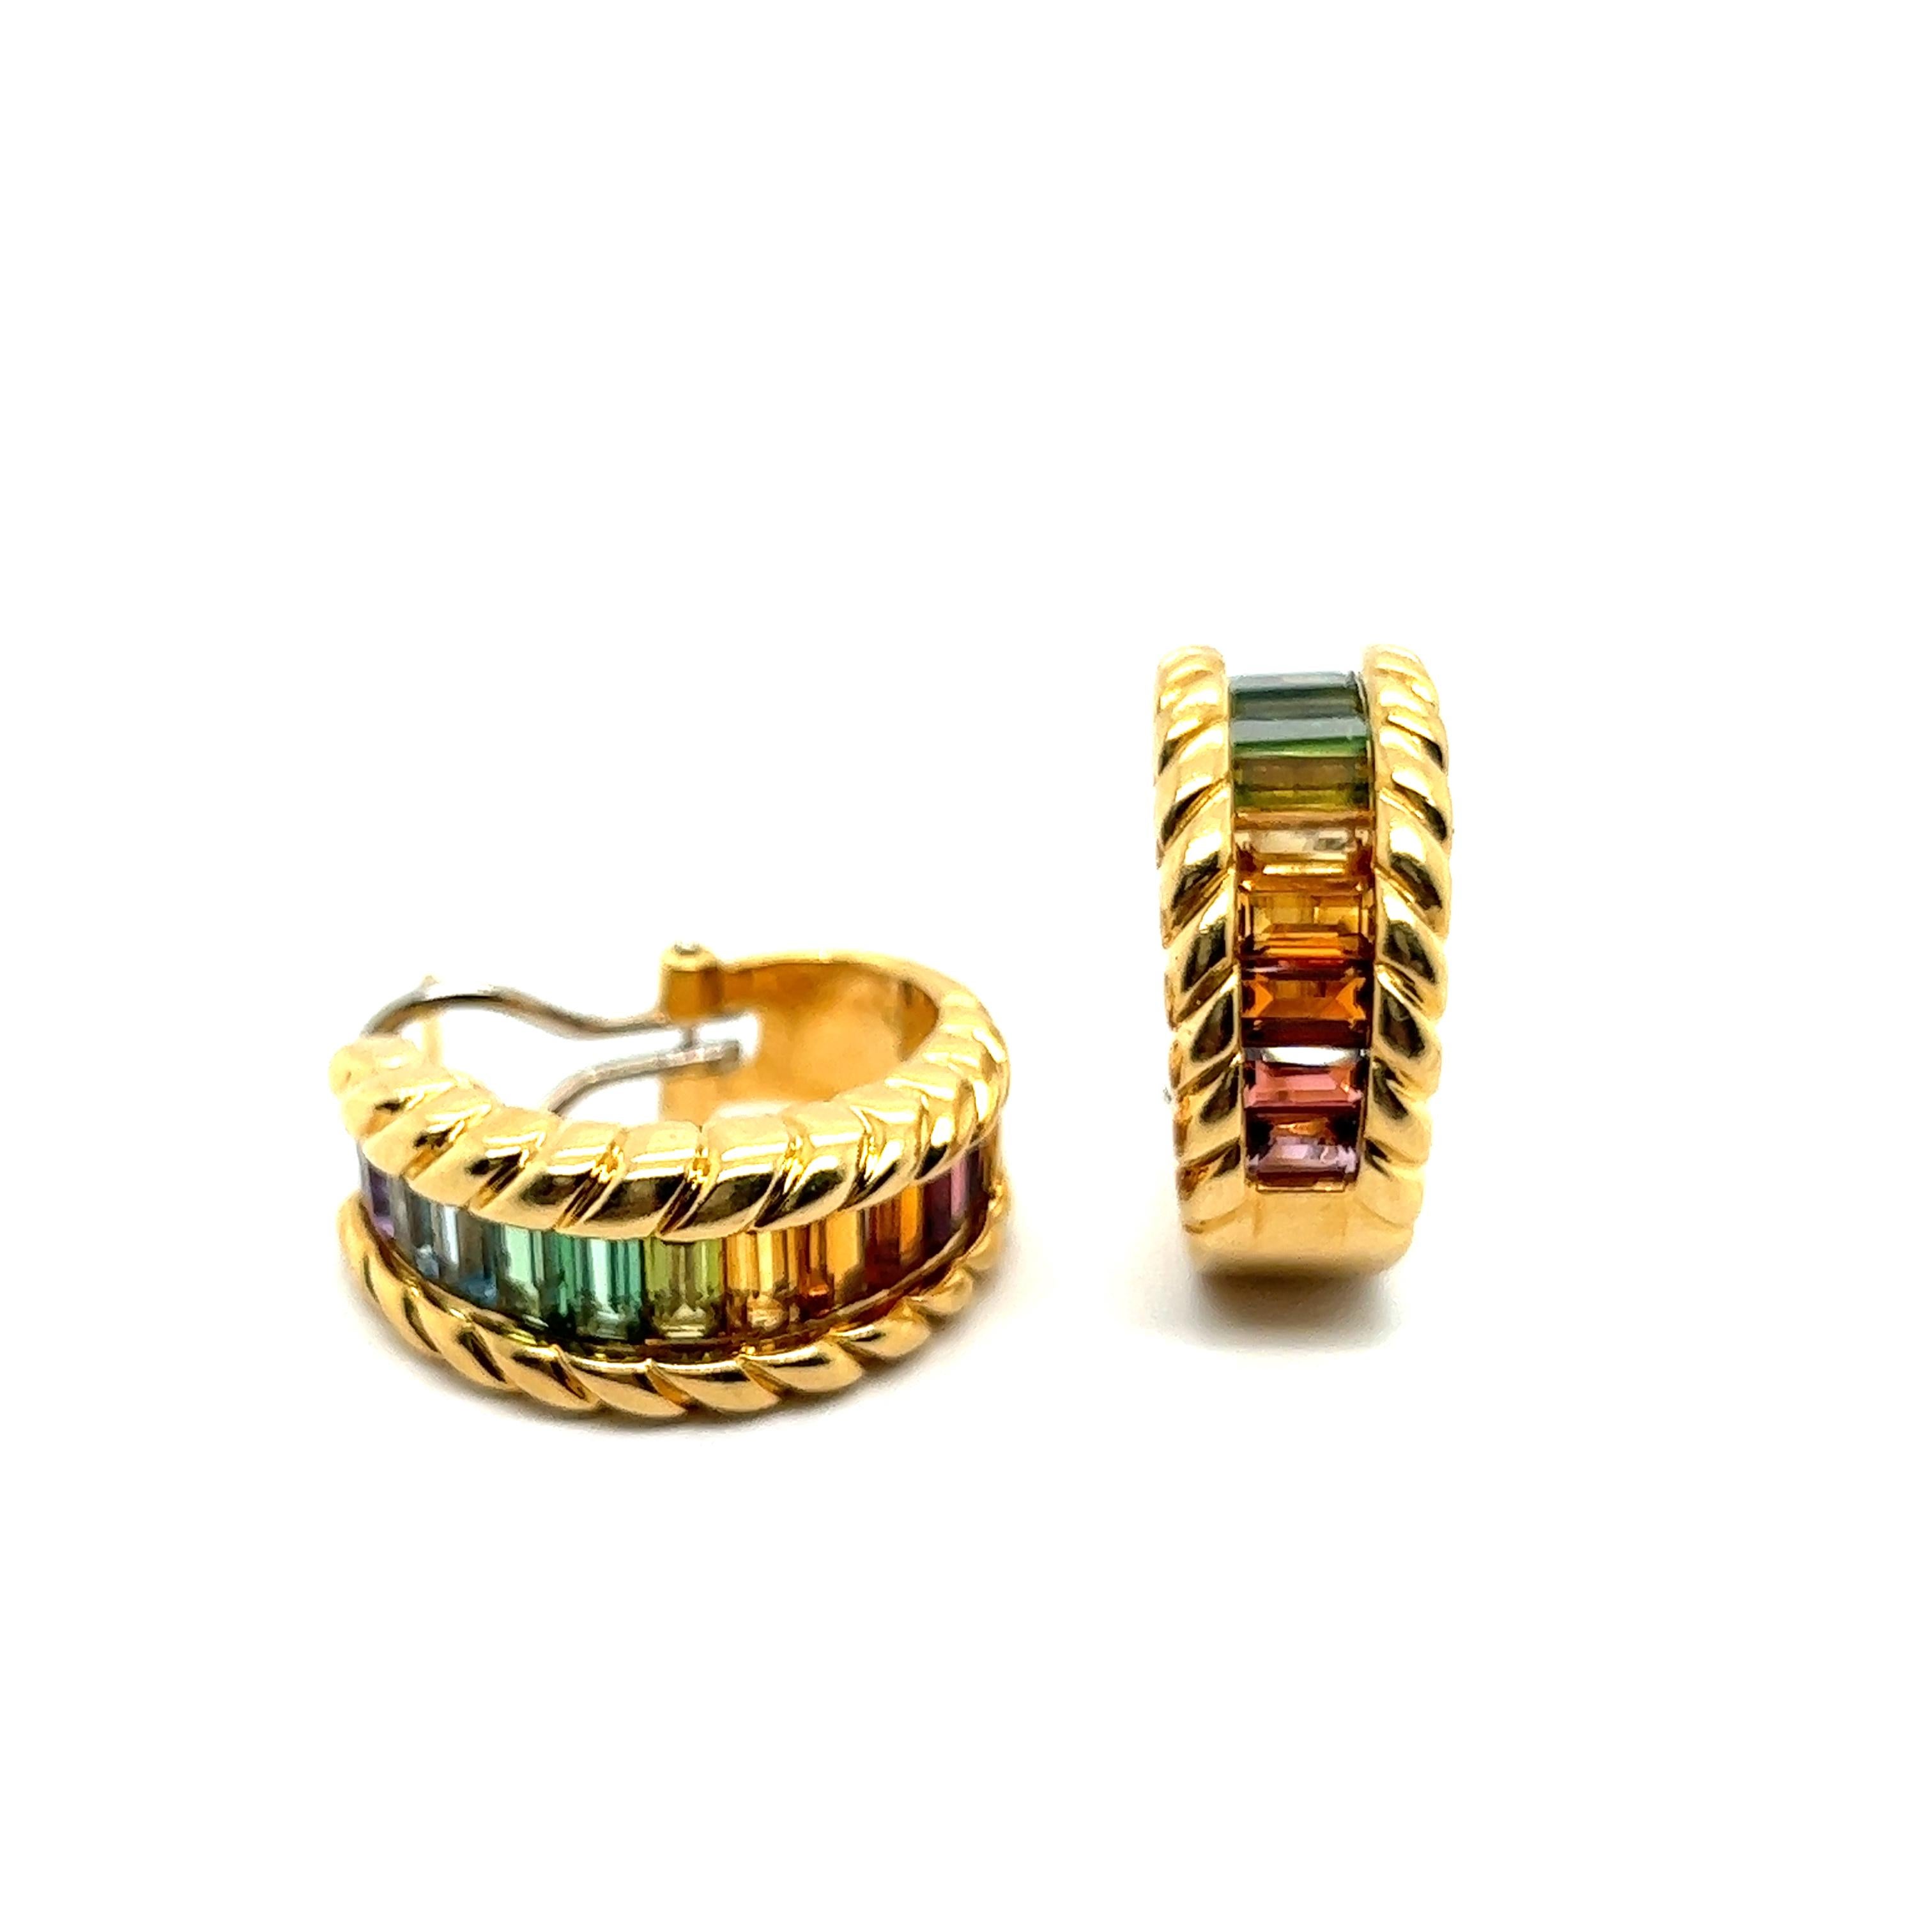 Baguette Cut Earrings with Rainbow Gemstones in 18 Karat Yellow Gold by Gübelin